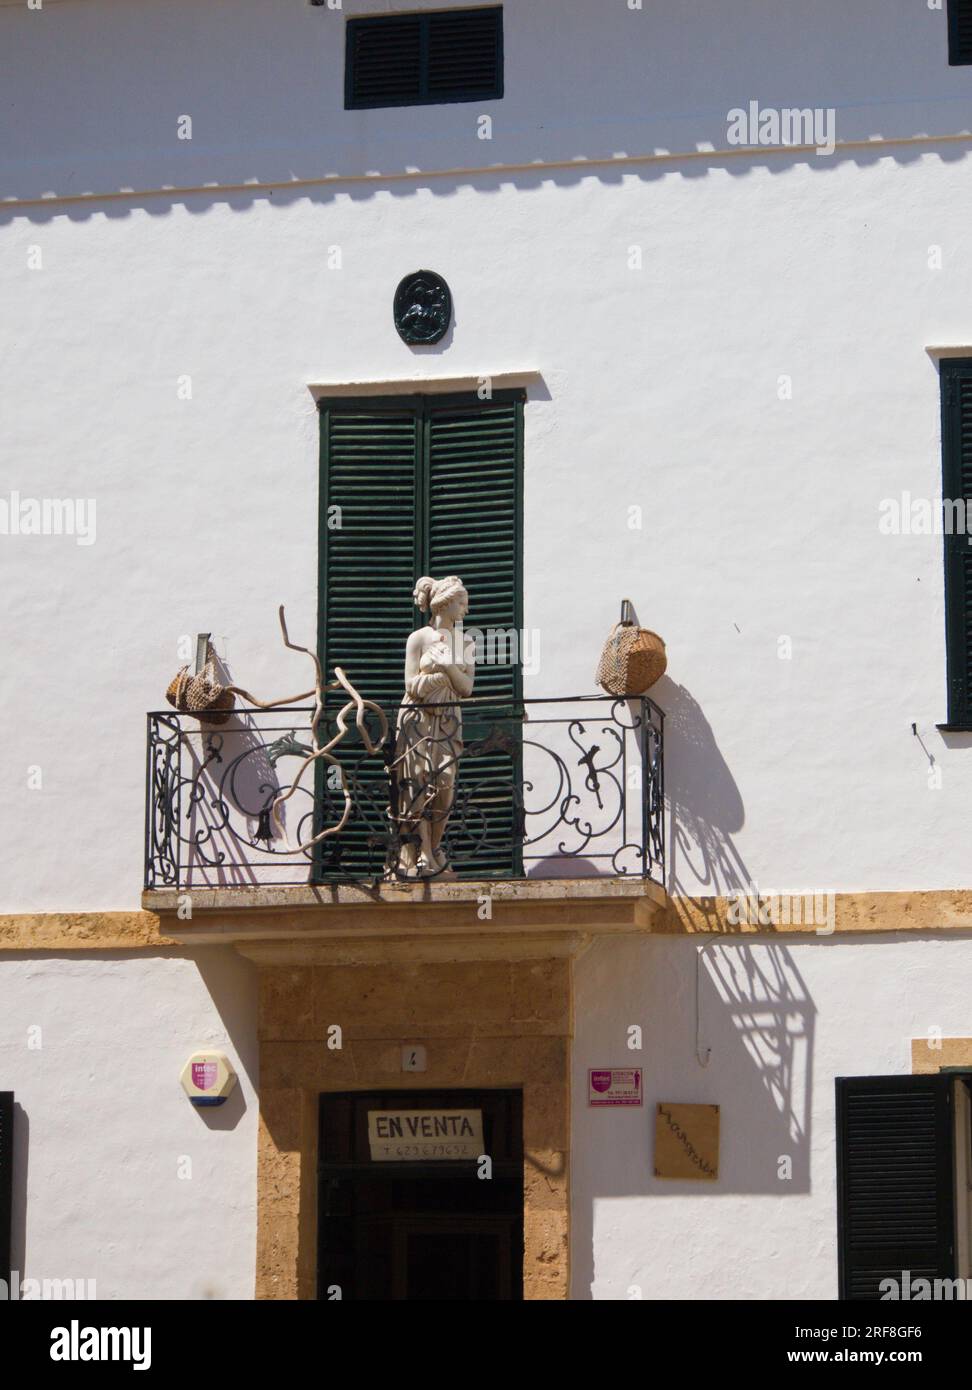 Una estatua de una mujer en el balcón de una casa en venta en Ciudadela, Menorca. .Una estatua de una mujer en el balcón de una casa en venta. Stock Photo